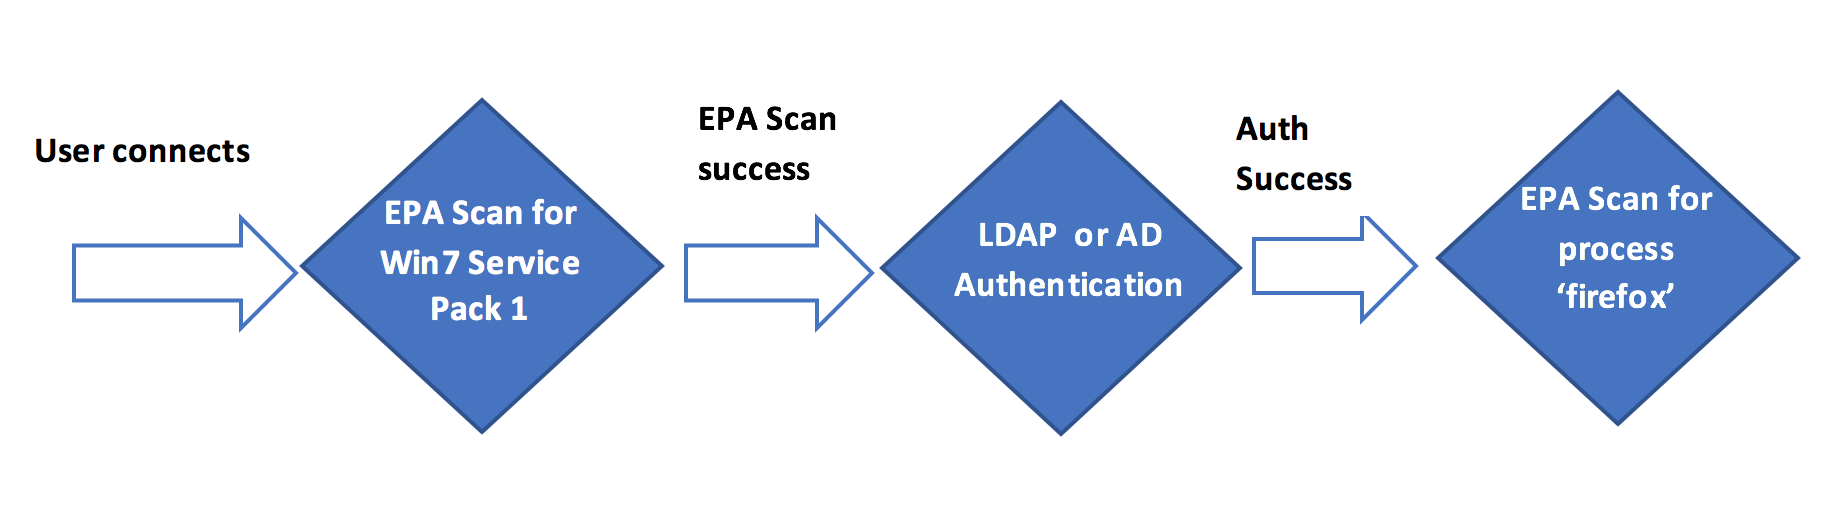 Representación del escaneo EPA utilizado como verificación inicial en la autenticación nFactor o multifactor